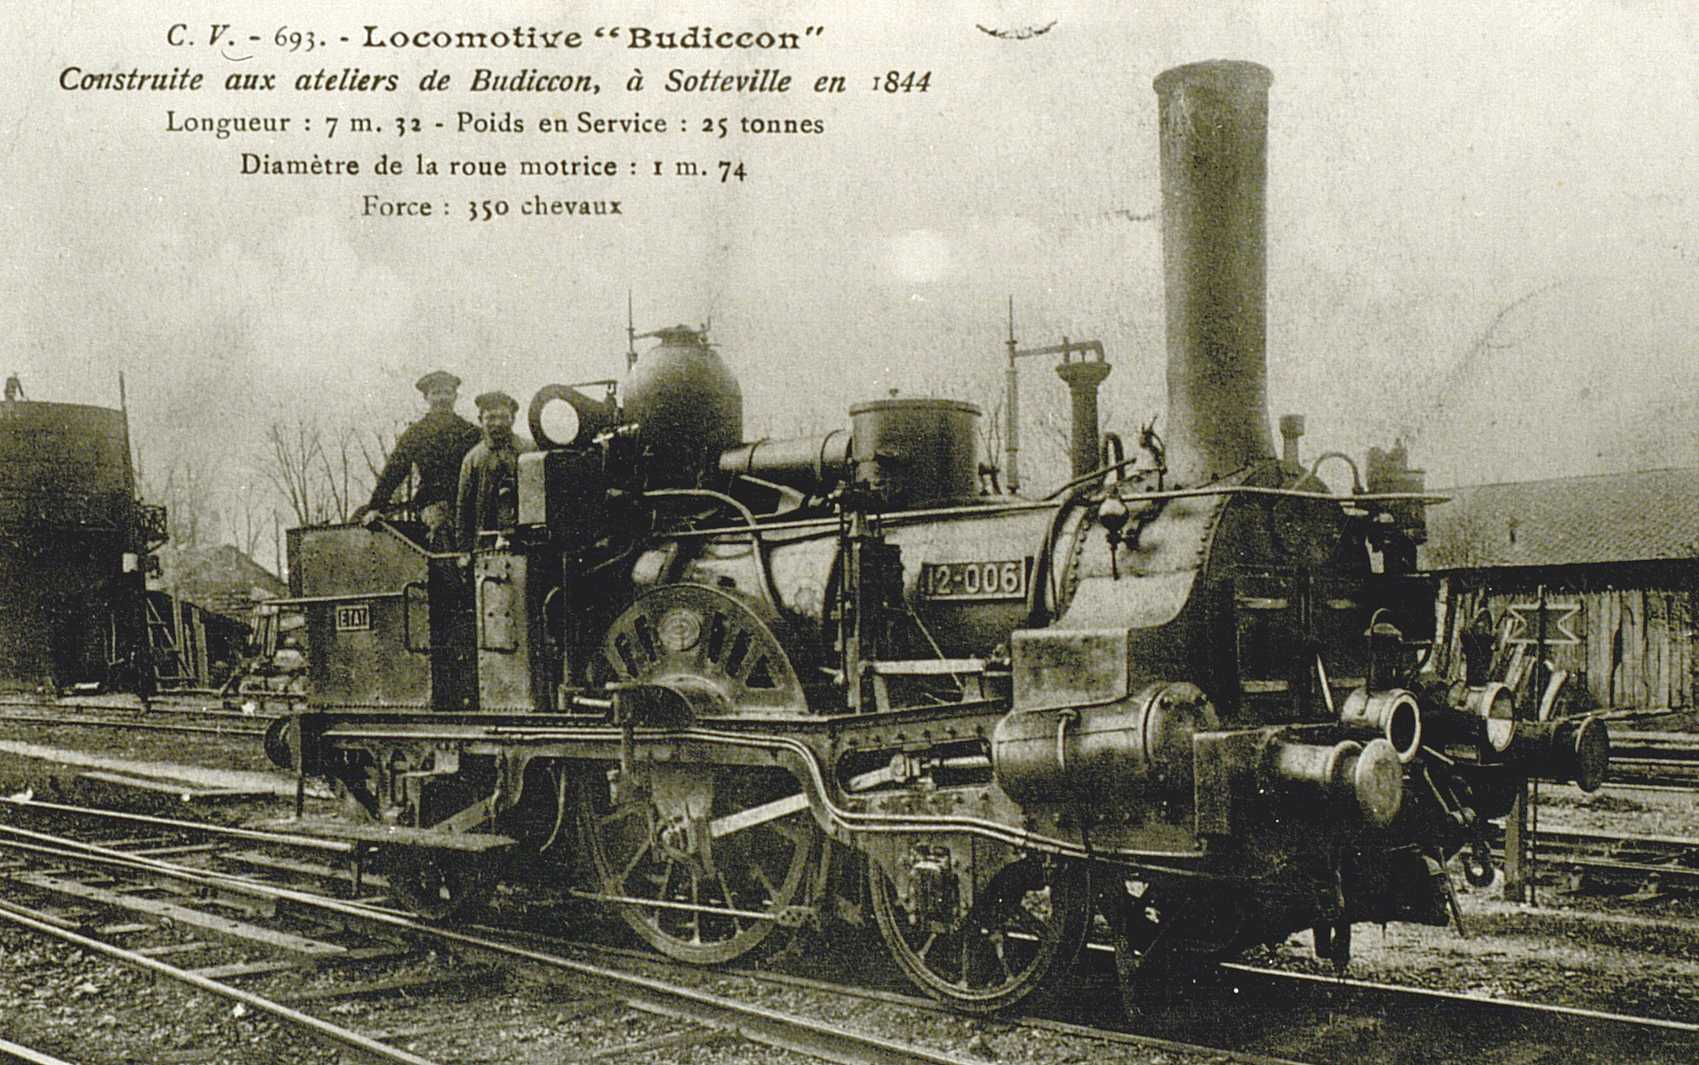 Locomotive Budiccom